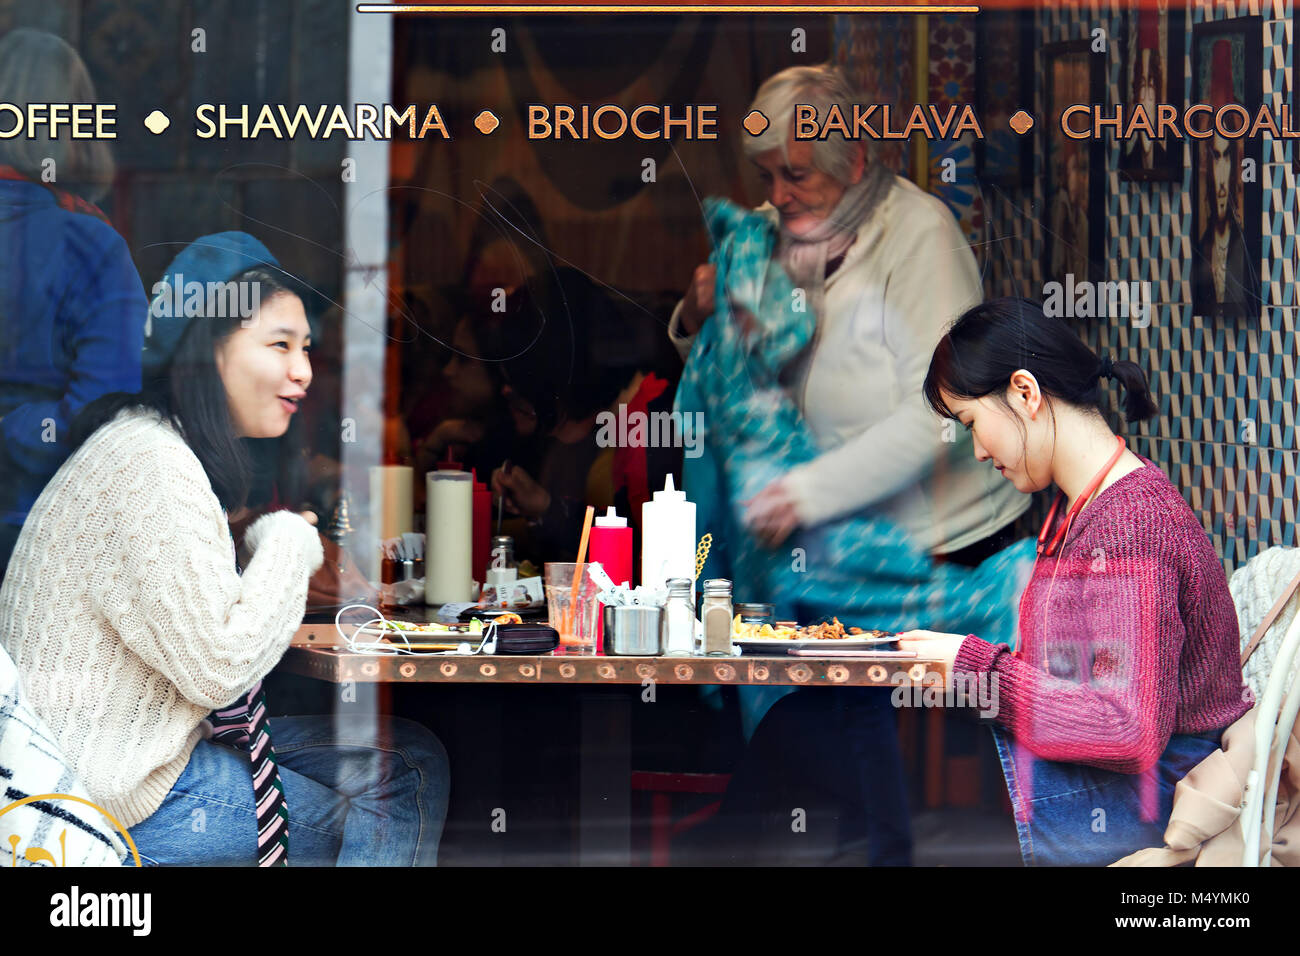 Ehrliches Bild von zwei jungen Frauen chinesischen Ursprungs genießen Sie eine Mahlzeit und ein Chat in einem Cafe, echtes Leben nicht inszeniert. Stockfoto